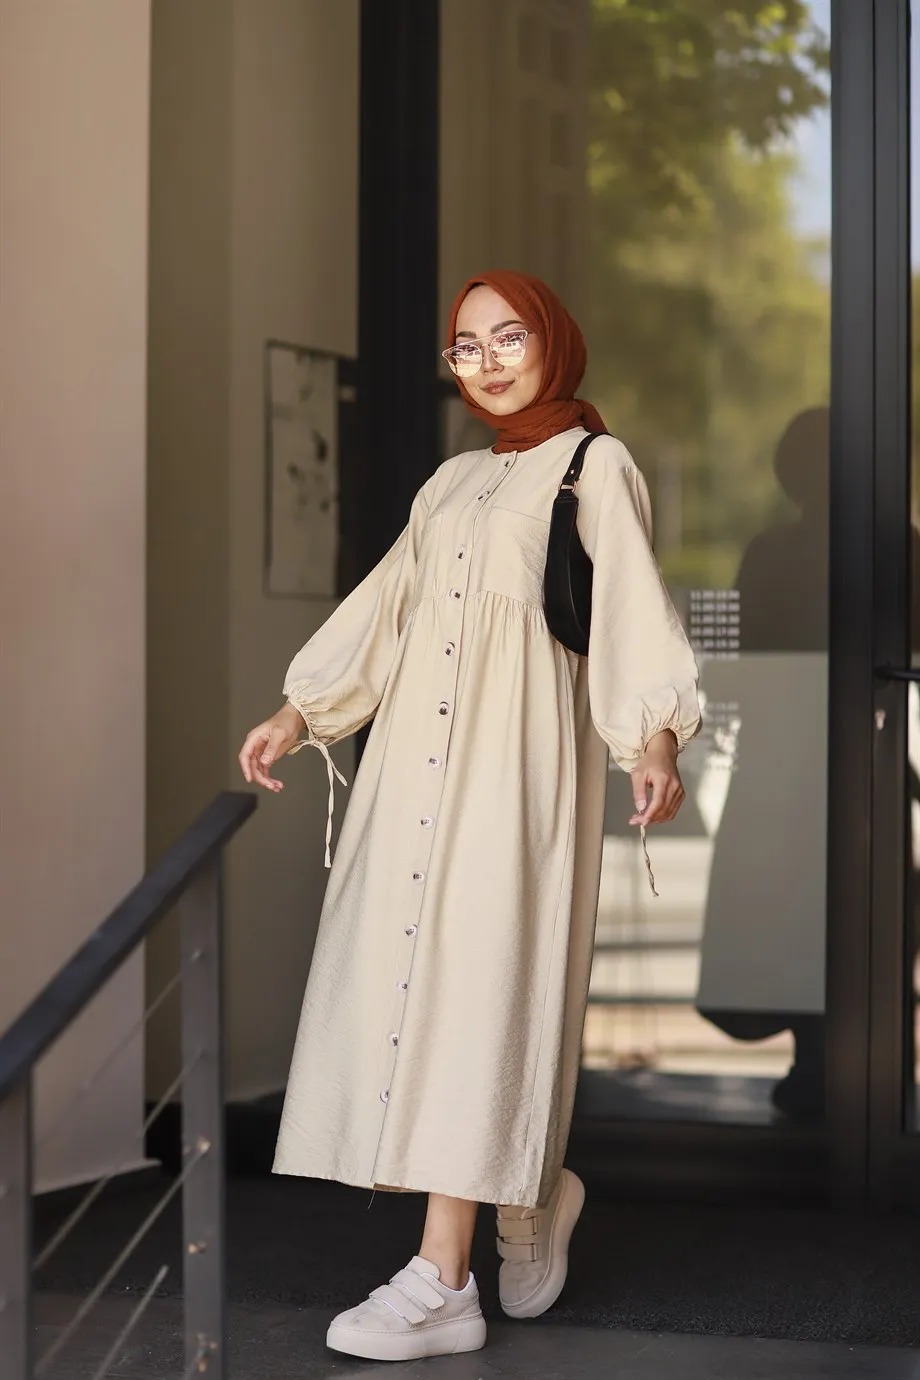 Платье женское льняное на пуговицах спереди и с карманами, стильная сезонная одежда в мусульманском стиле, хиджаб